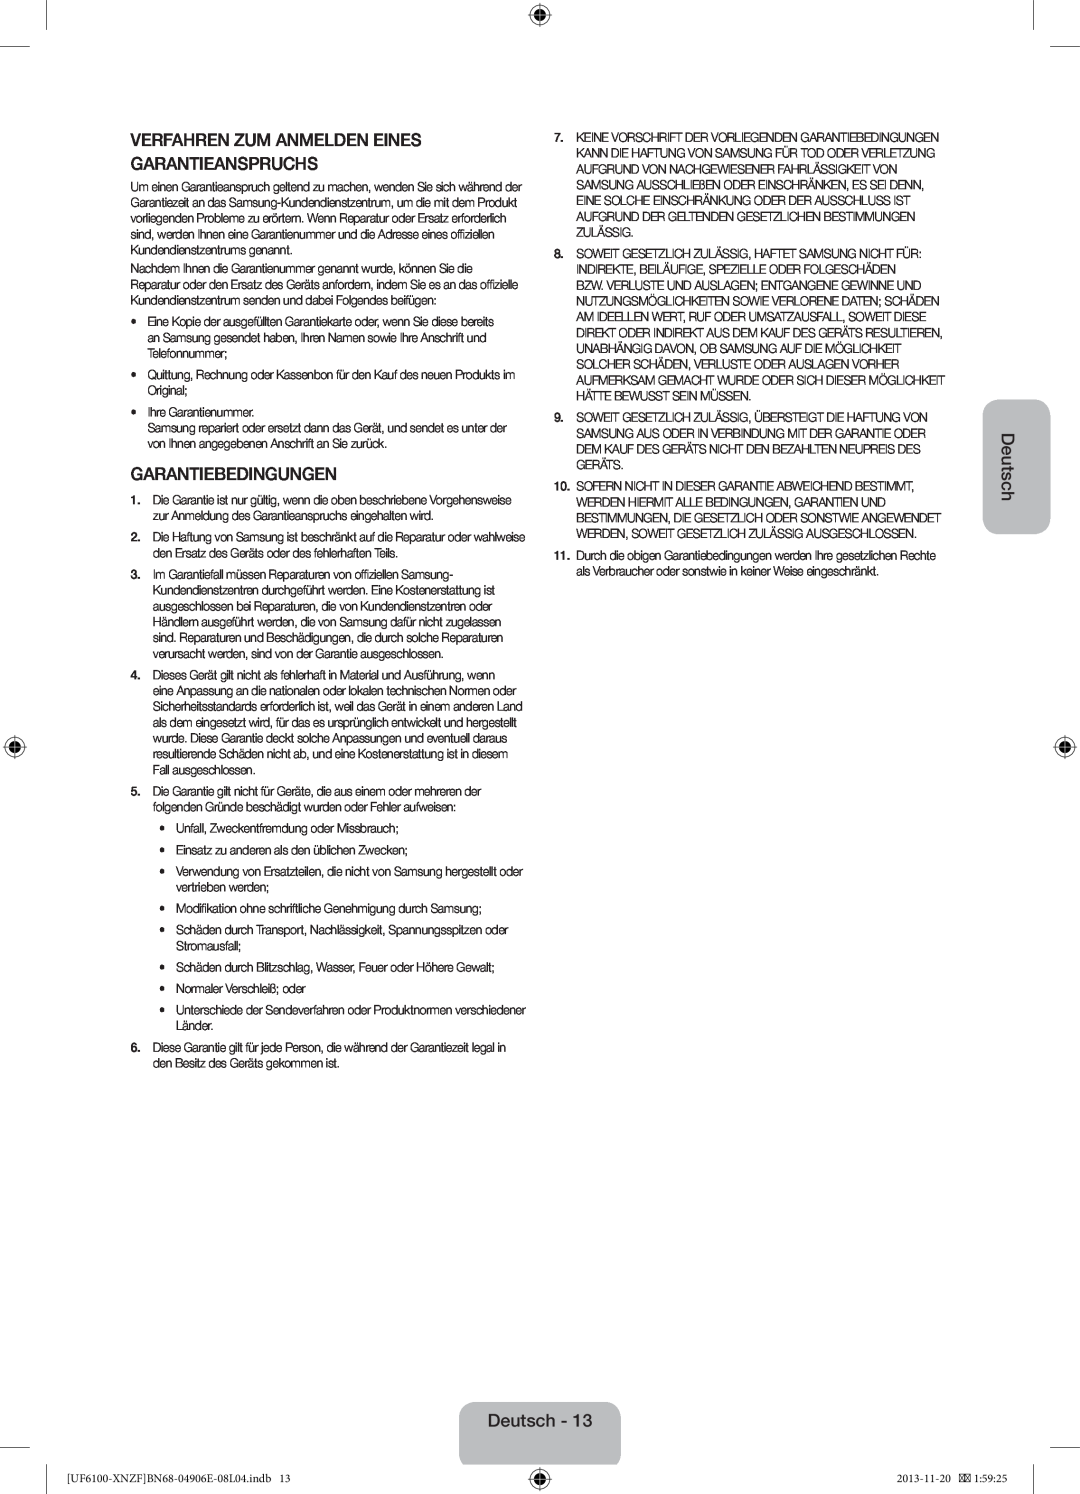 Samsung UE40F6100AWXZF Verfahren Zum Anmelden Eines Garantieanspruchs, Garantiebedingungen, Deutsch, Ihre Garantienummer 